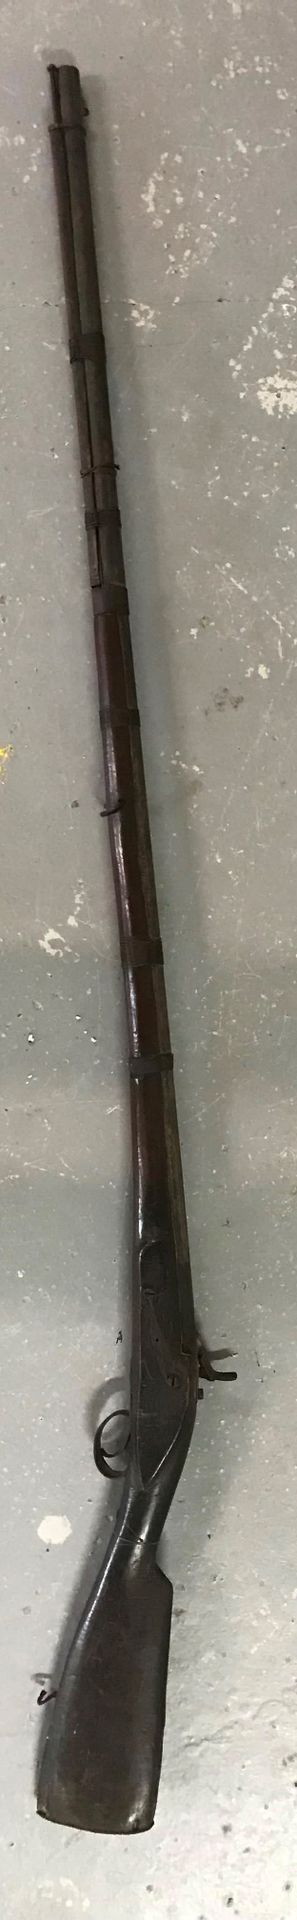 Null Rifle tipo mosquete 

En el estado 

L. 159 cm